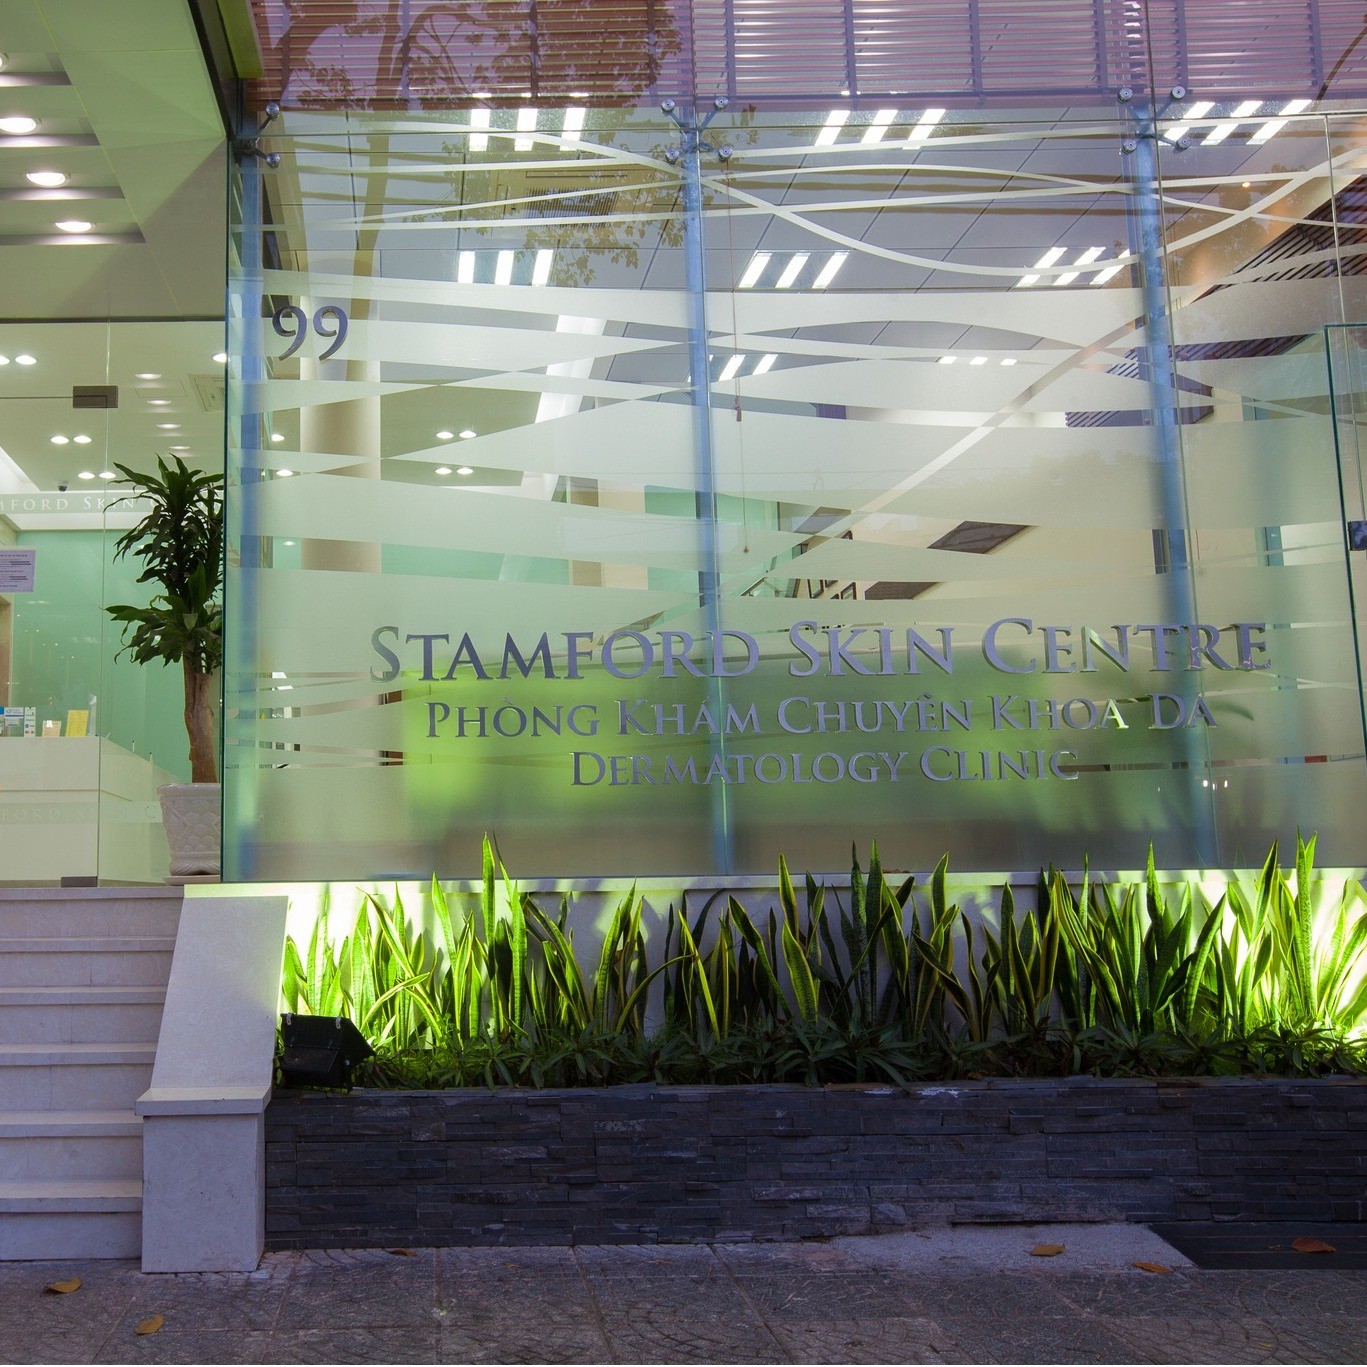 Stamford Skin Centre được đầu tư và xây dựng theo chuẩn quốc tế.